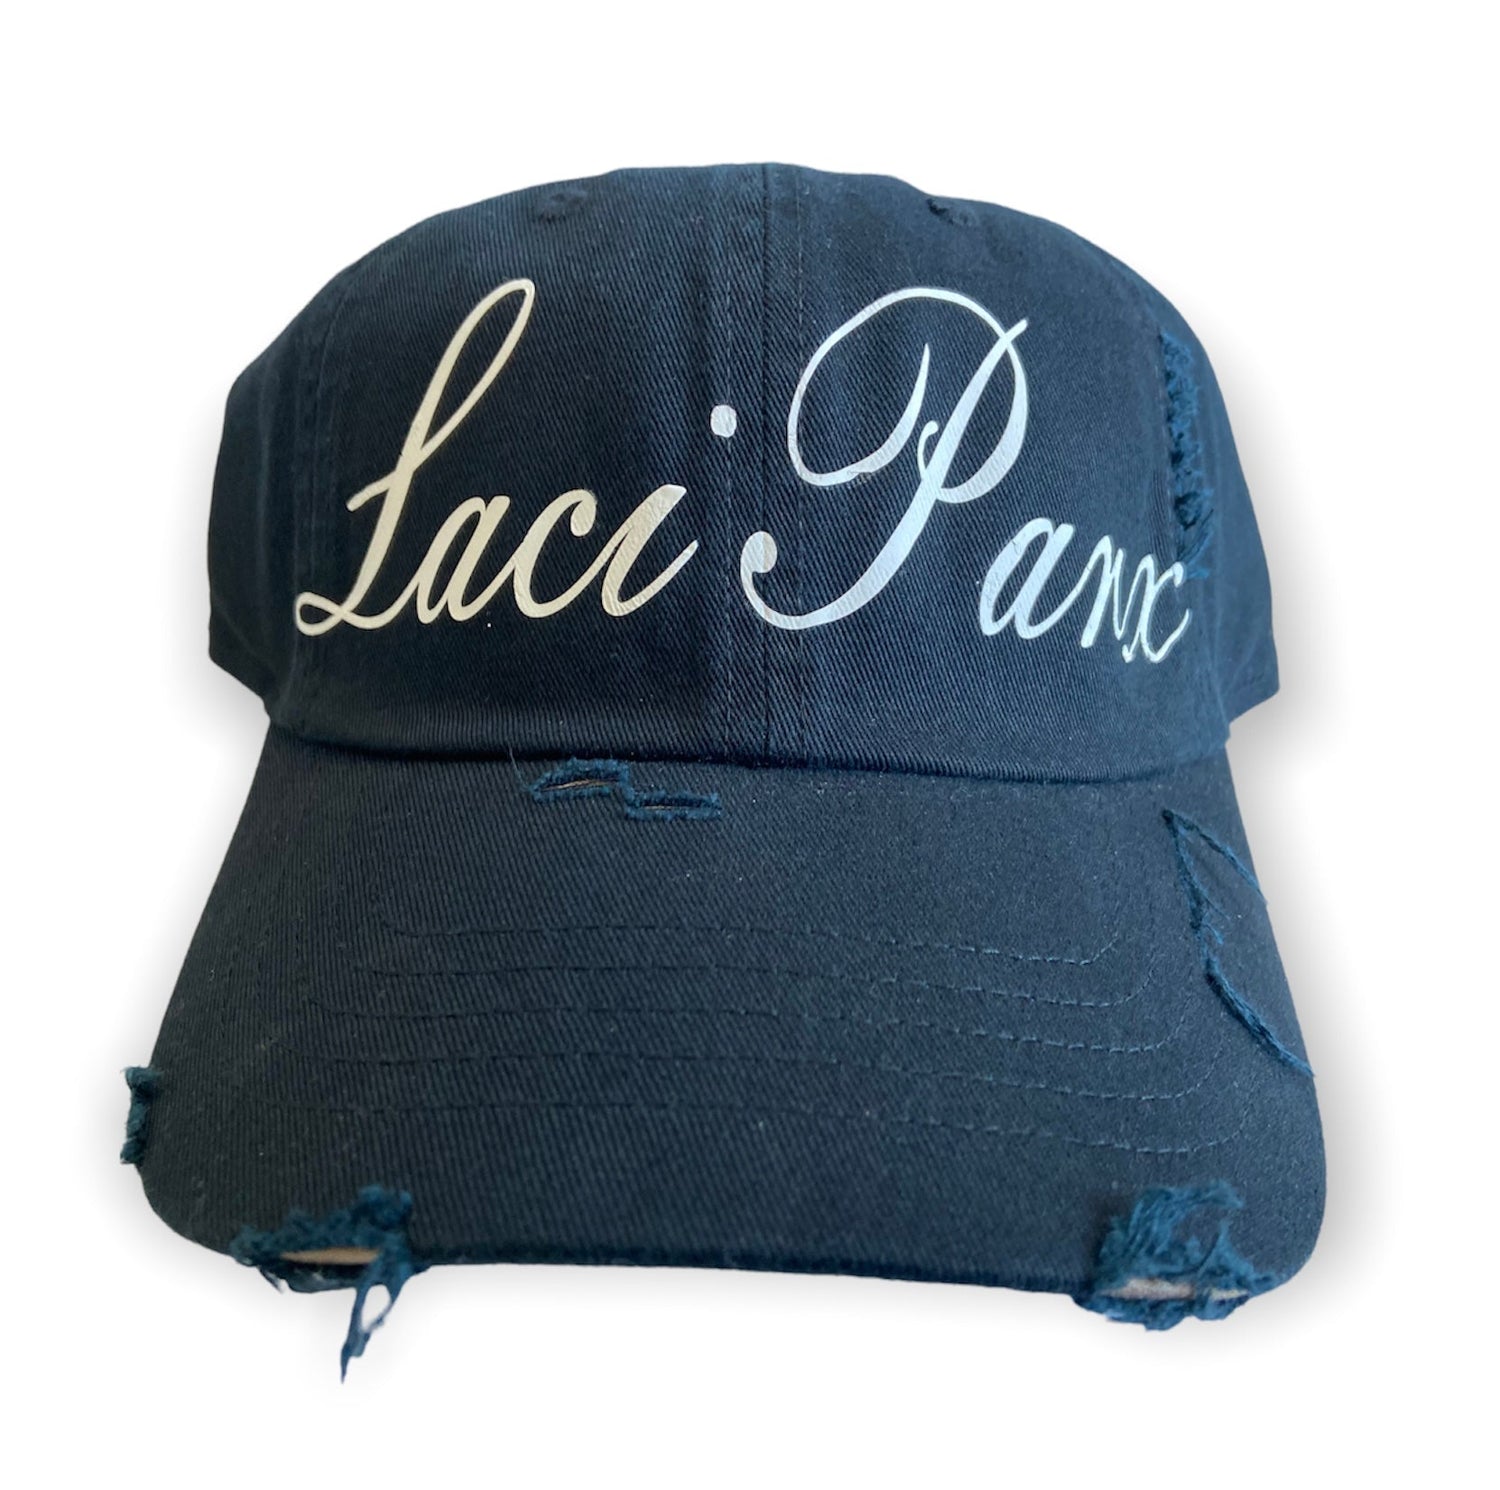 Laci Parx chapeau (hat) - Laci Parx